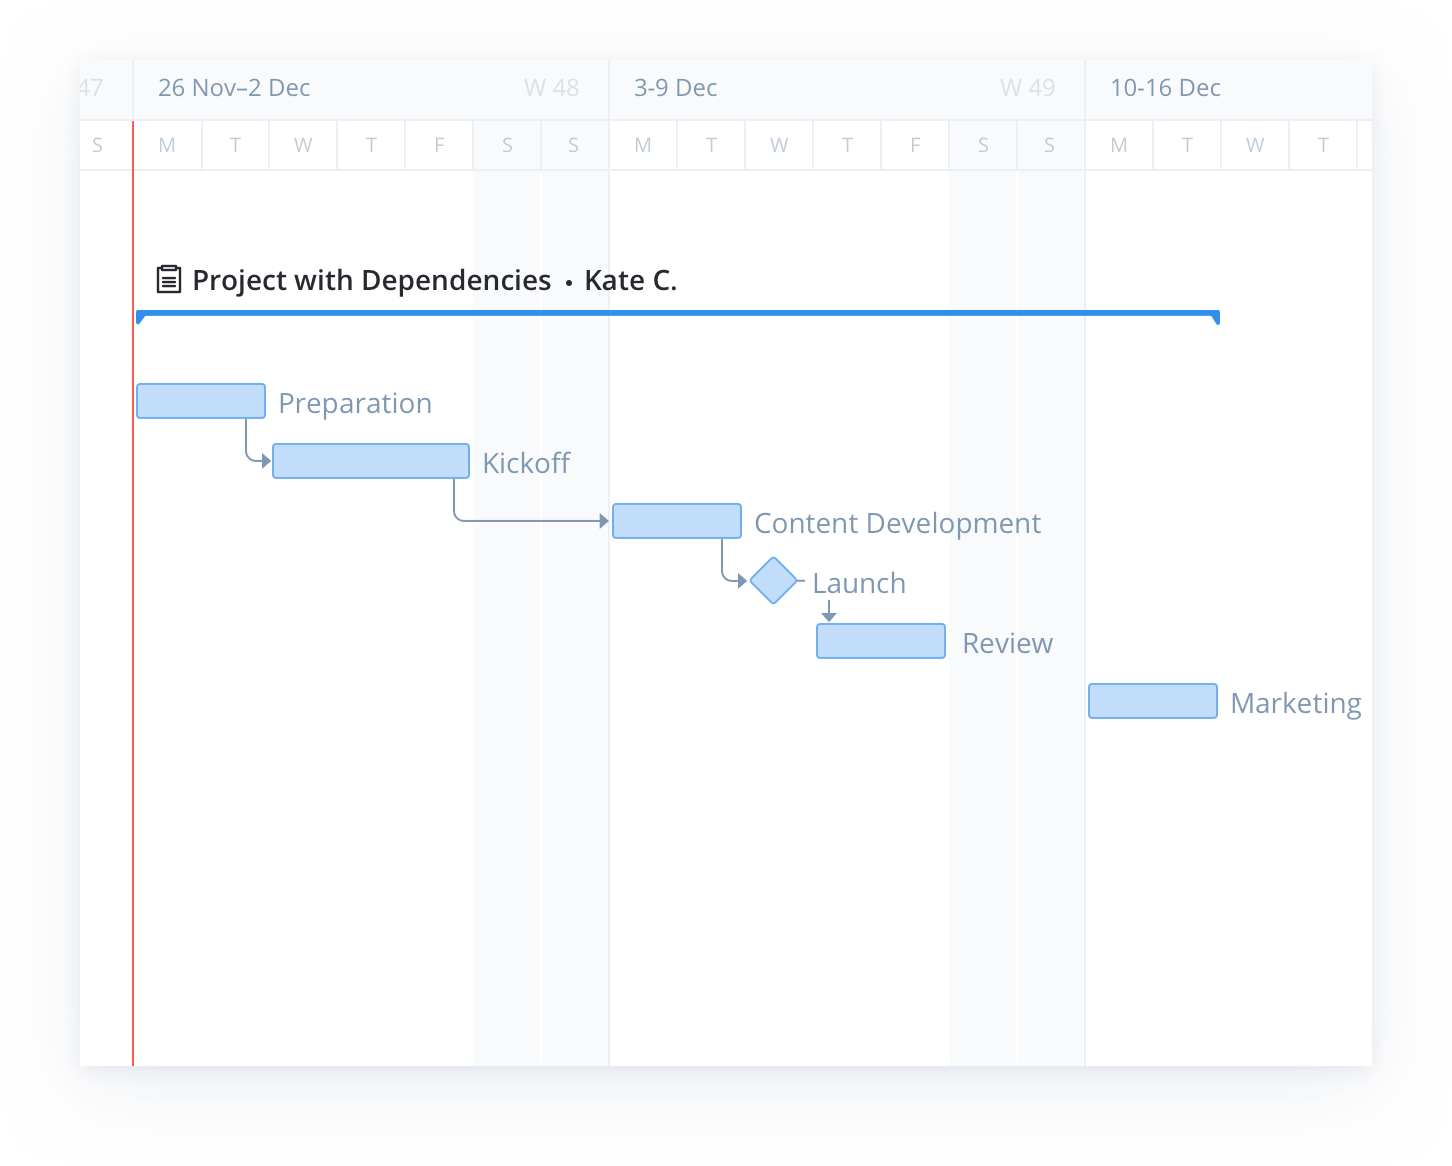 project management gantt chart template